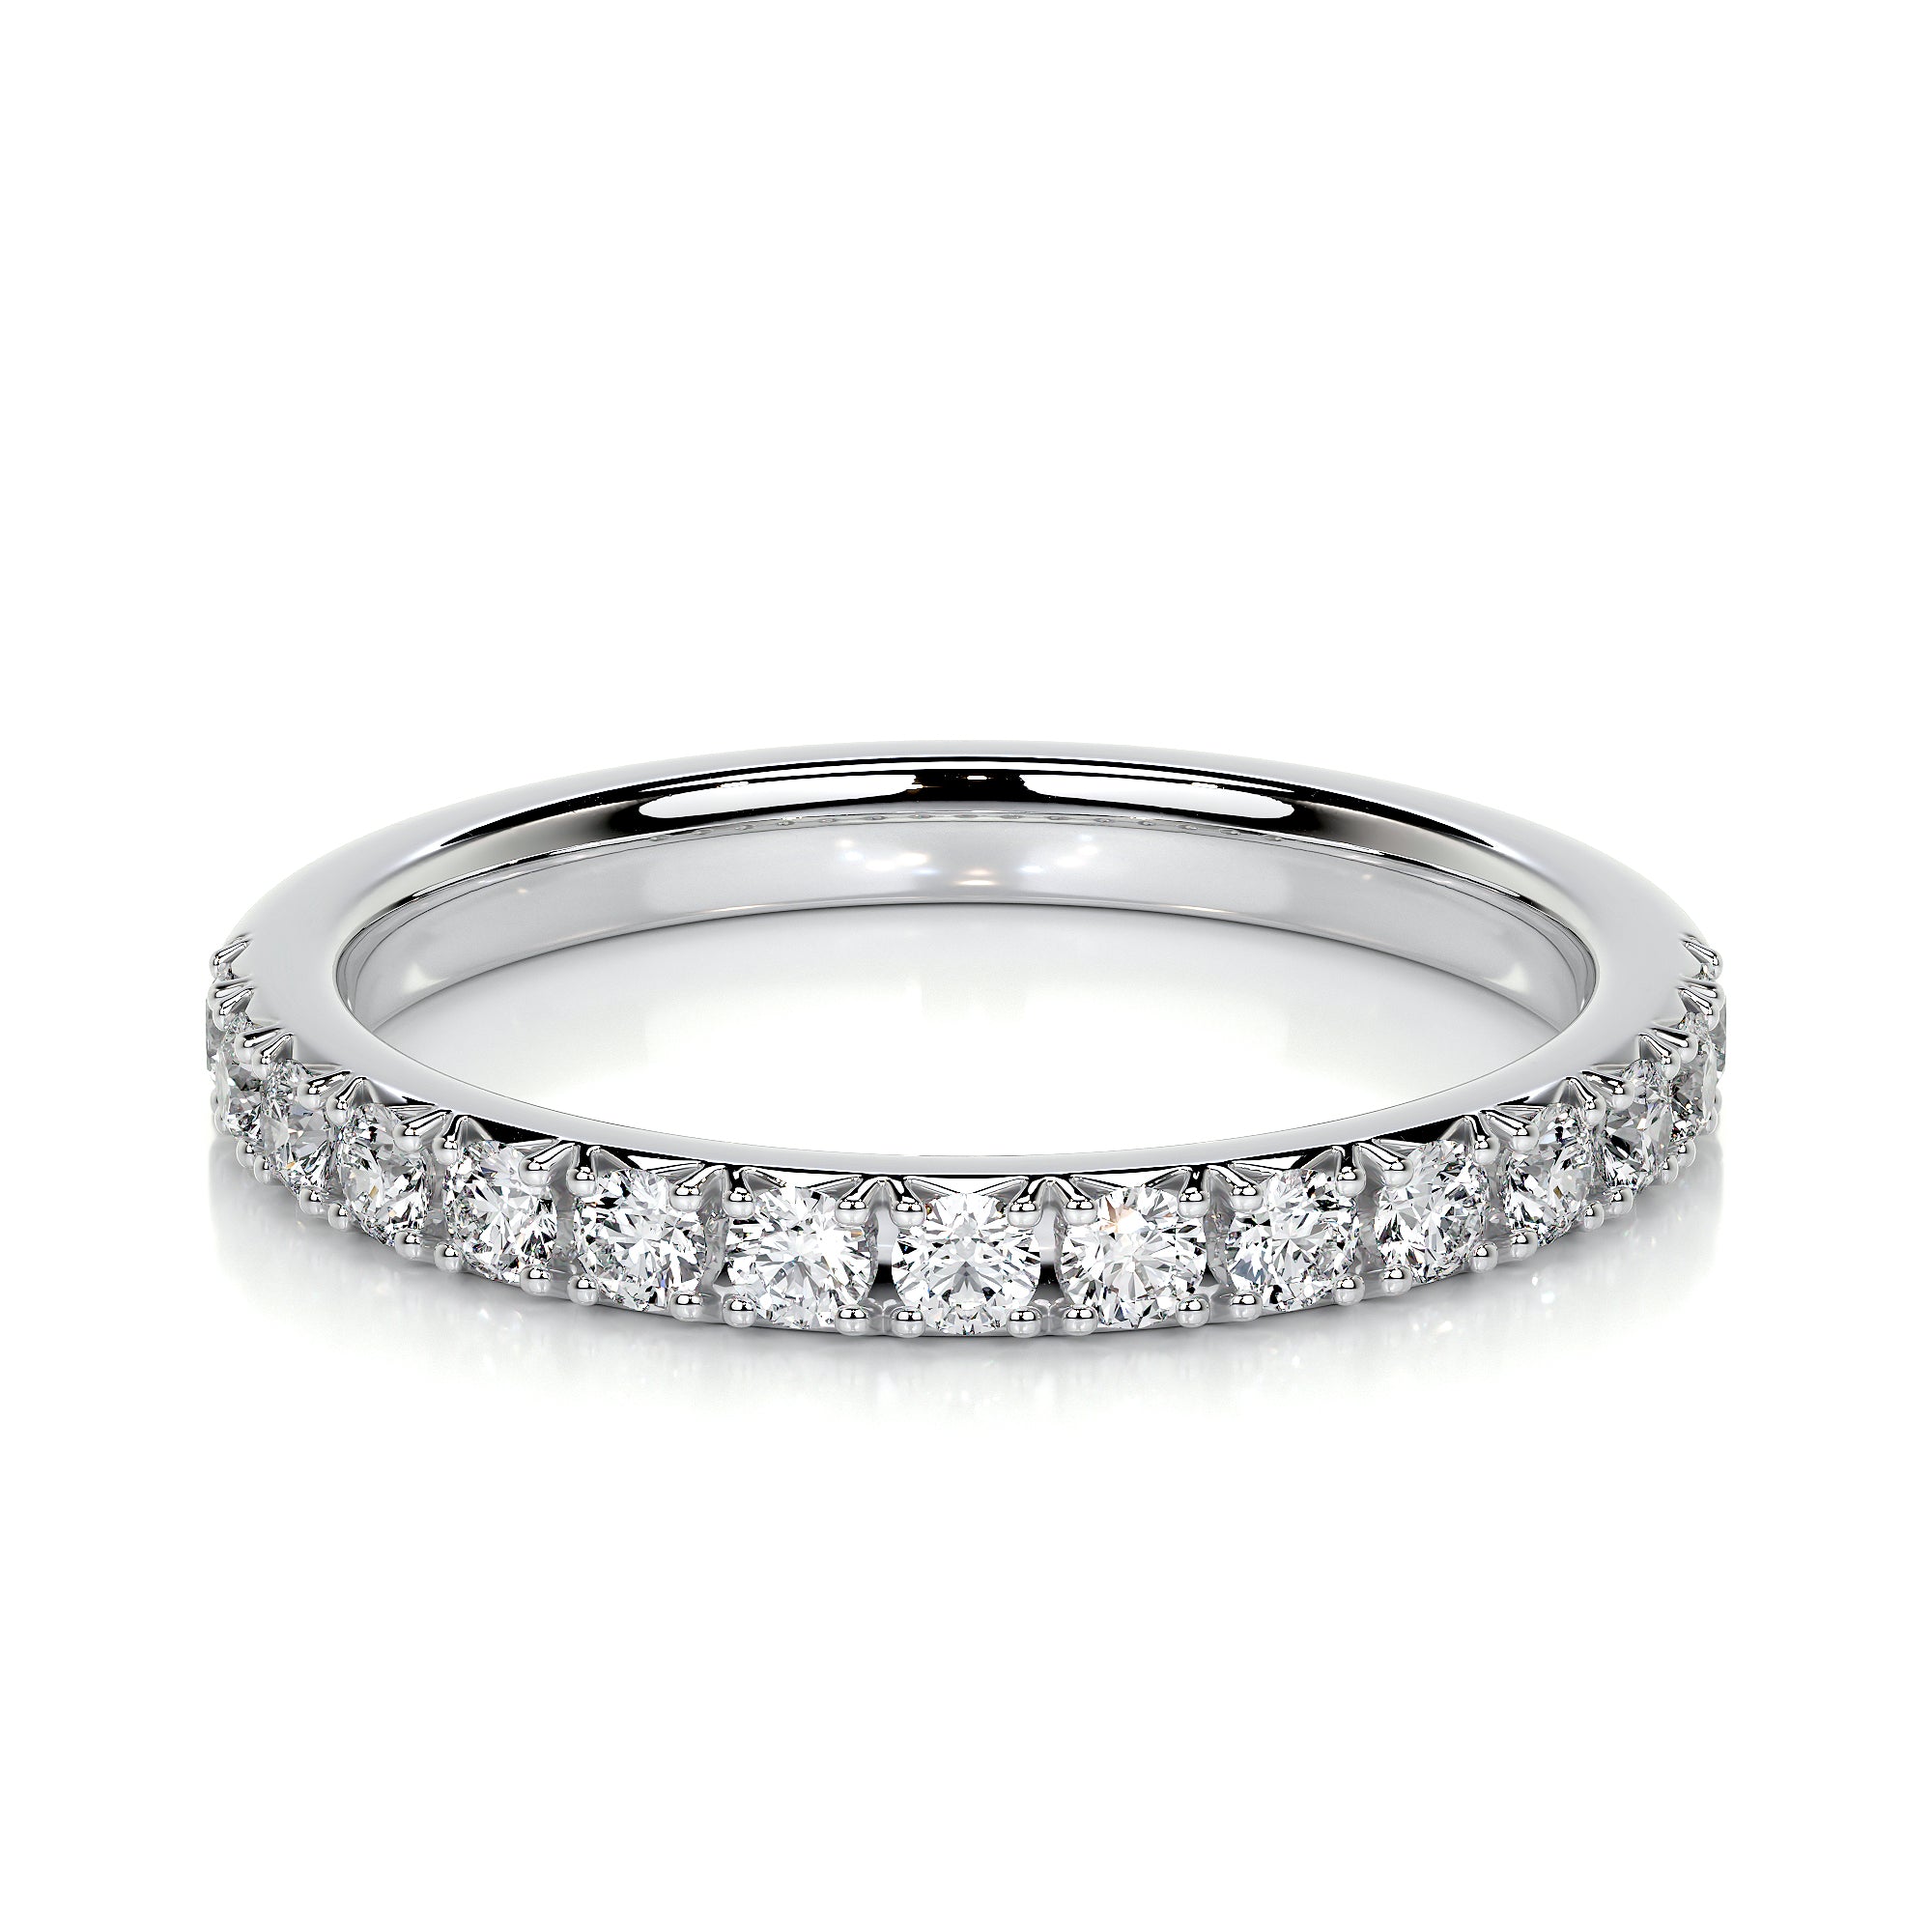 Buy Breathtaking Diamond Finger Ring Online | ORRA